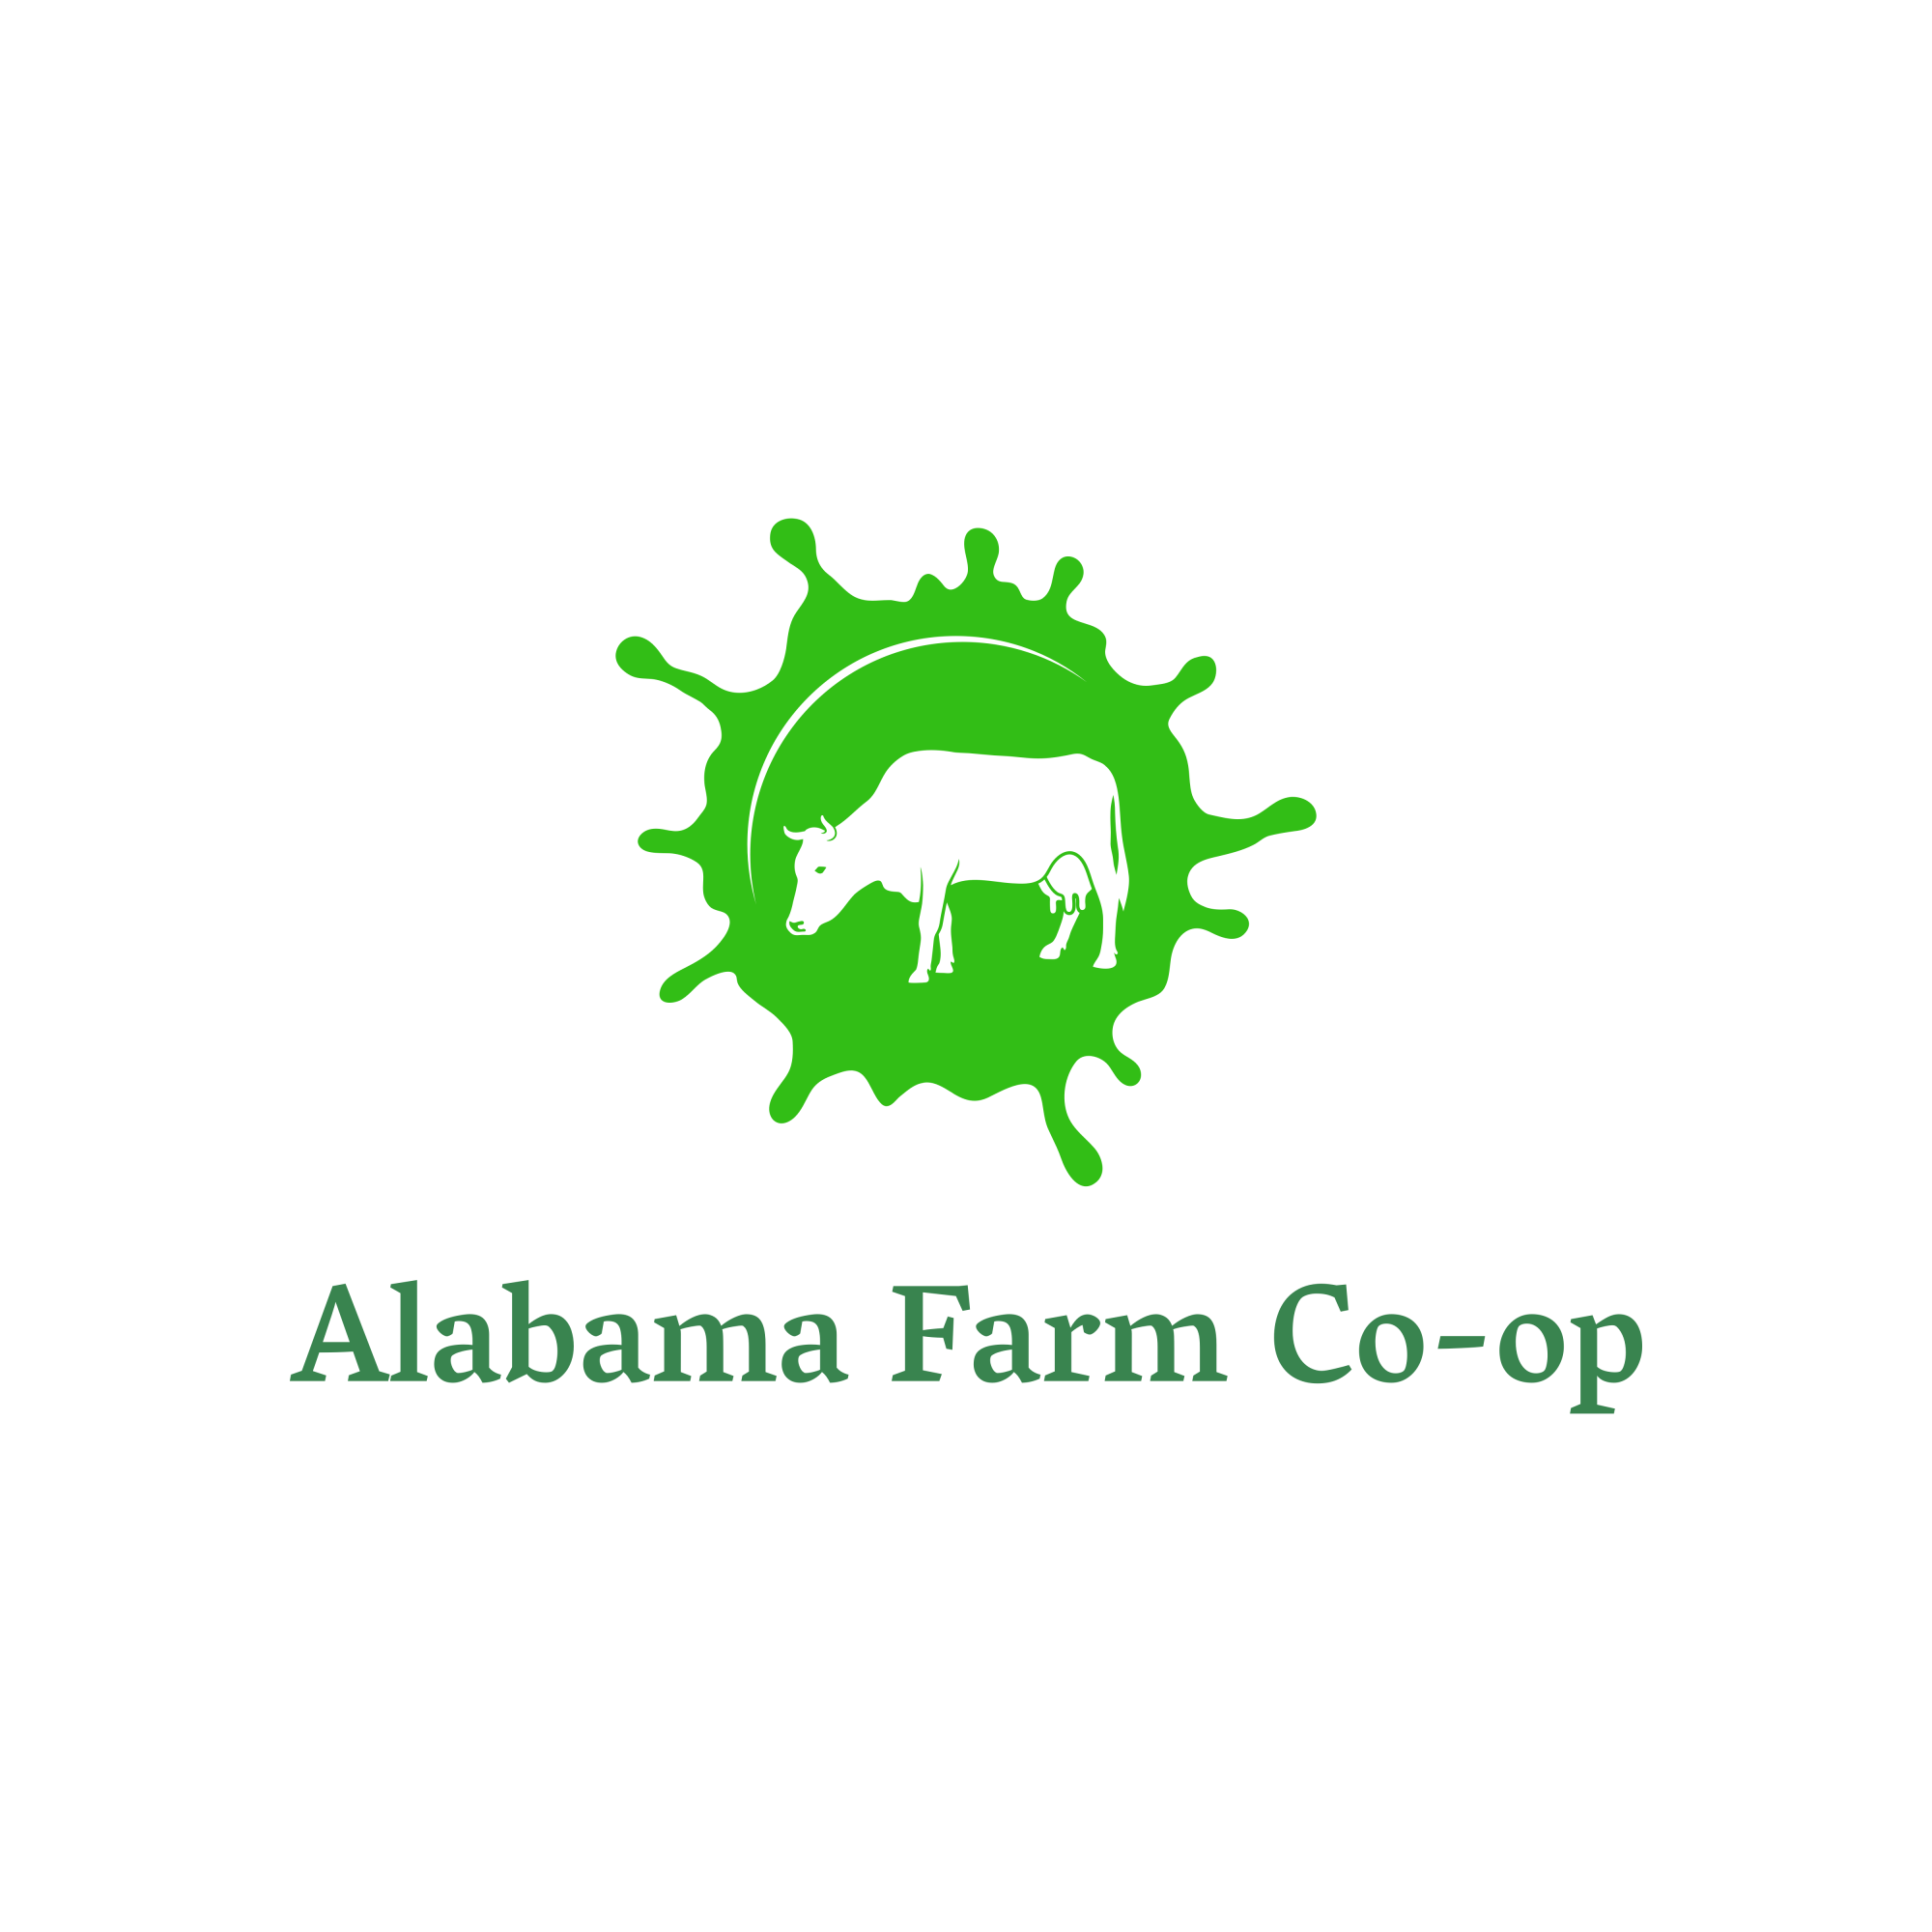 Alabama Farm Co-op